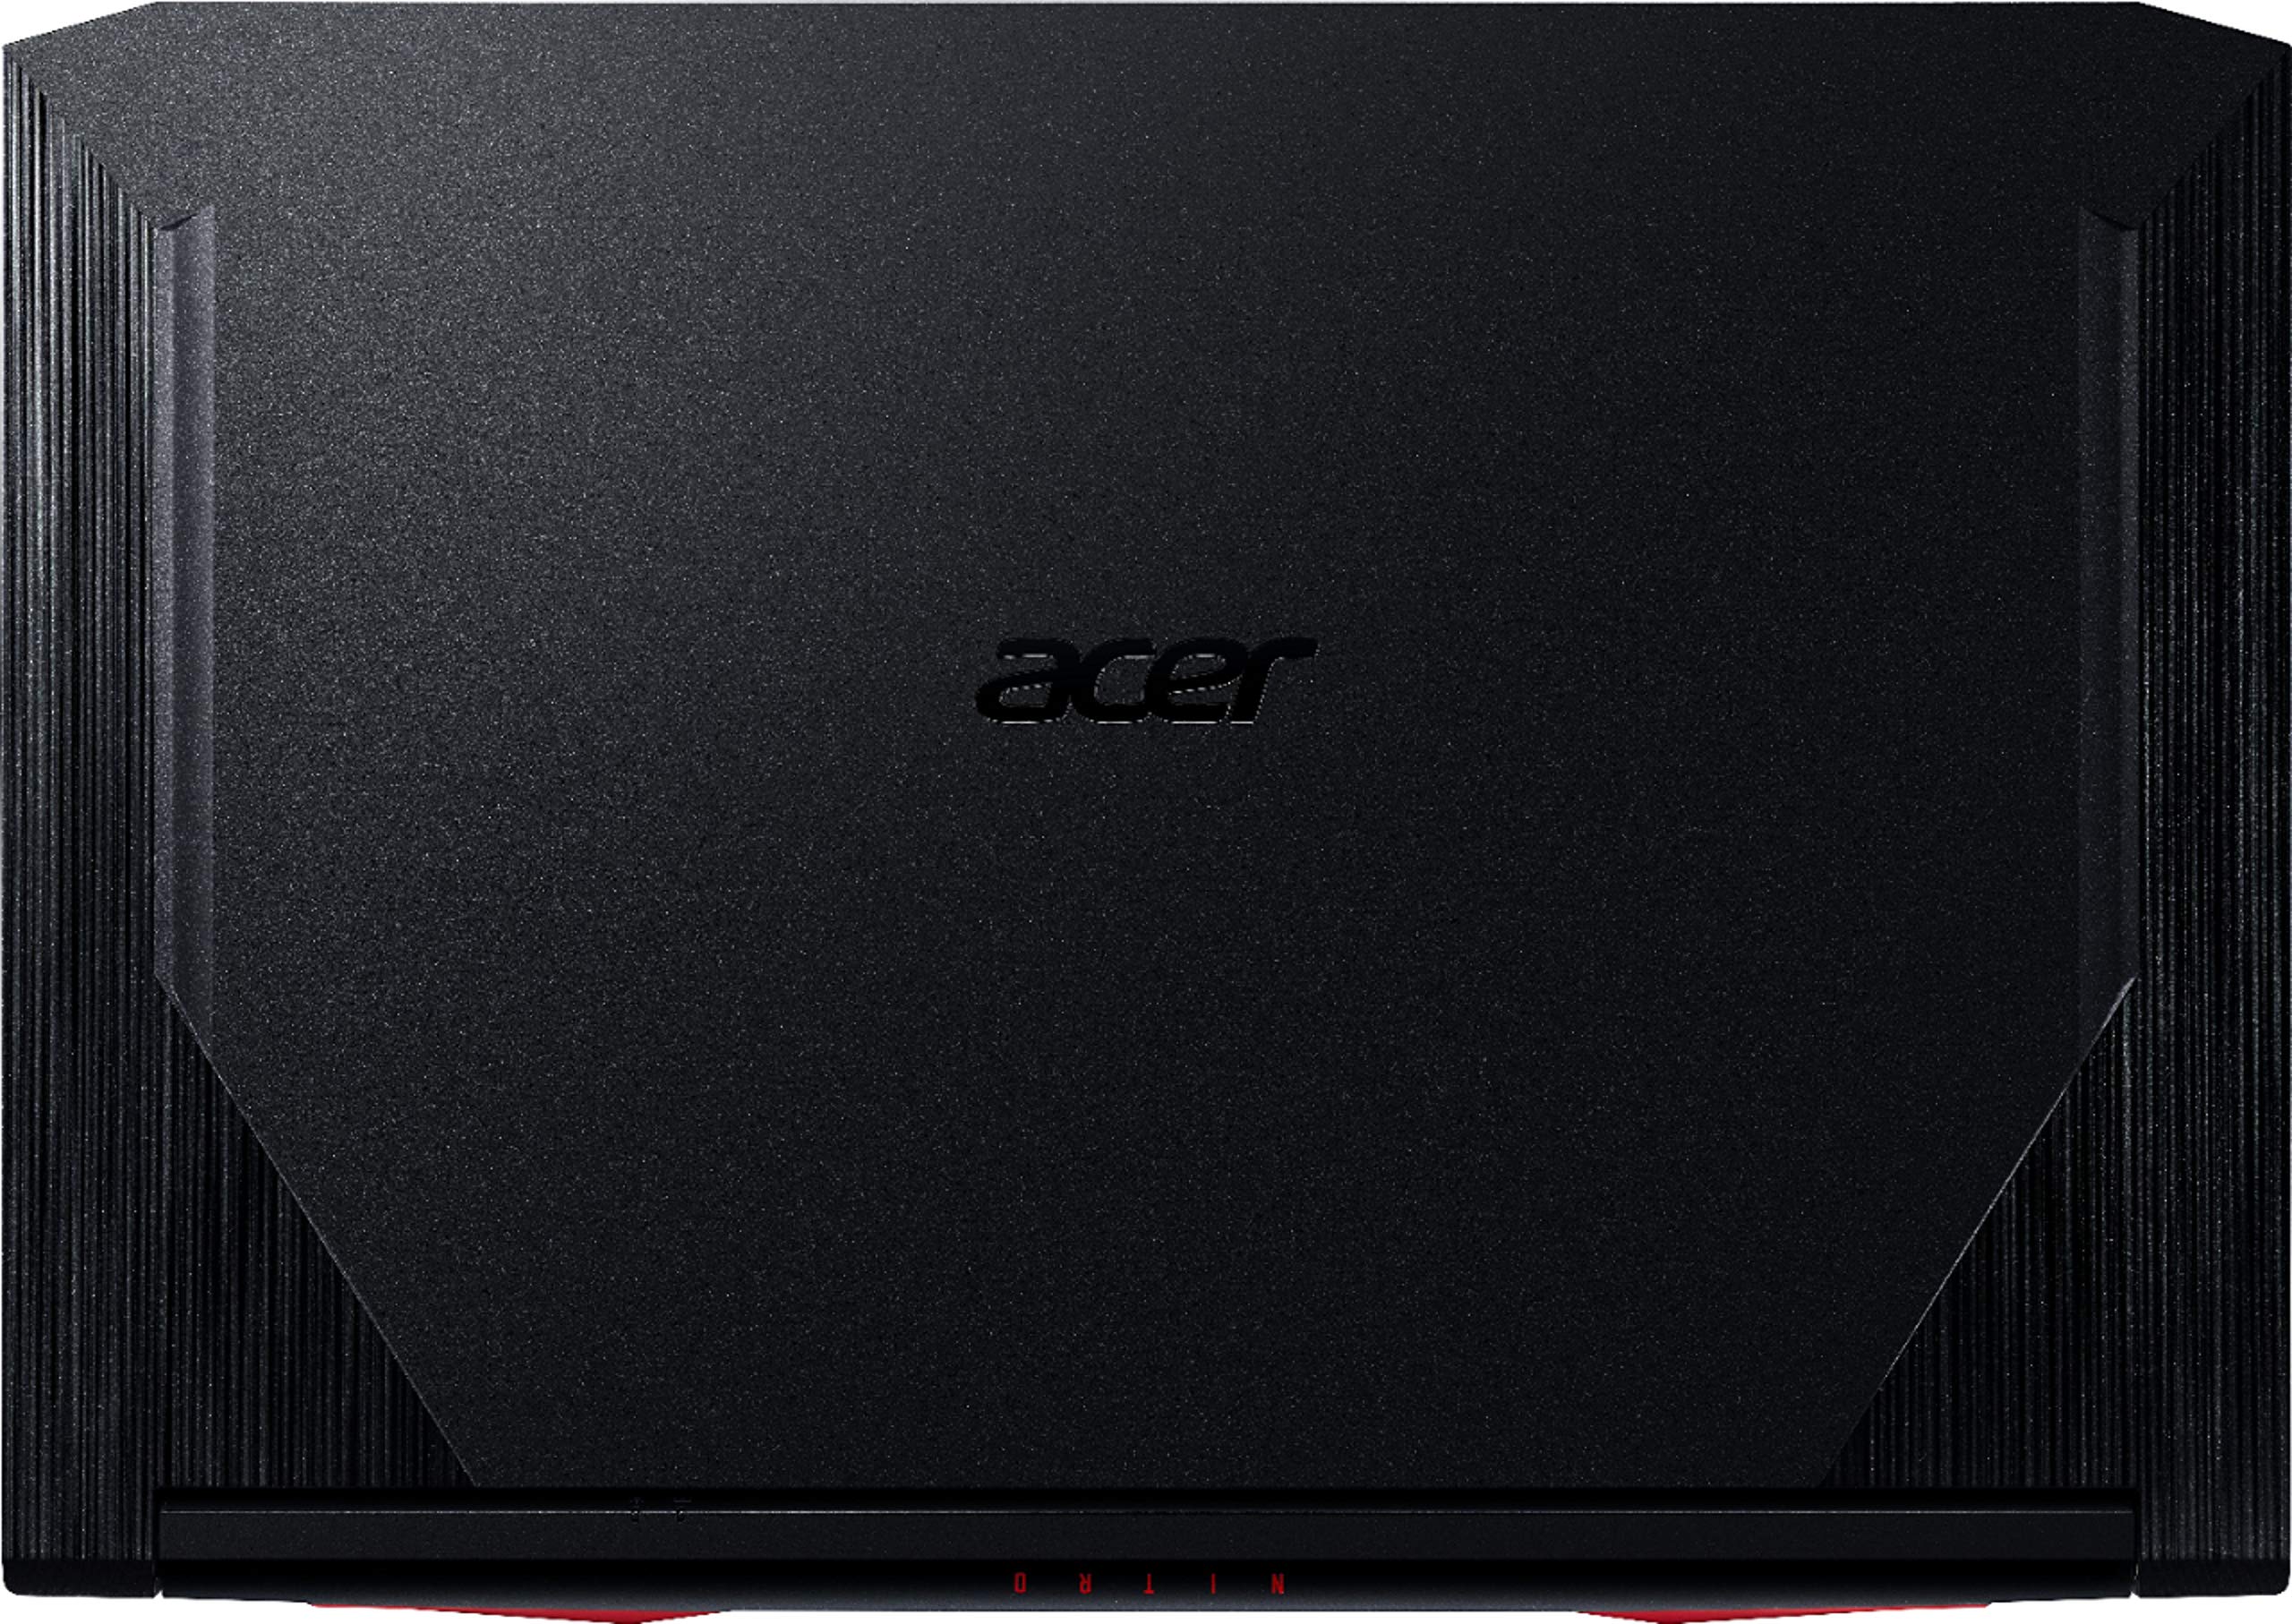 Acer - Nitro 5 17.3